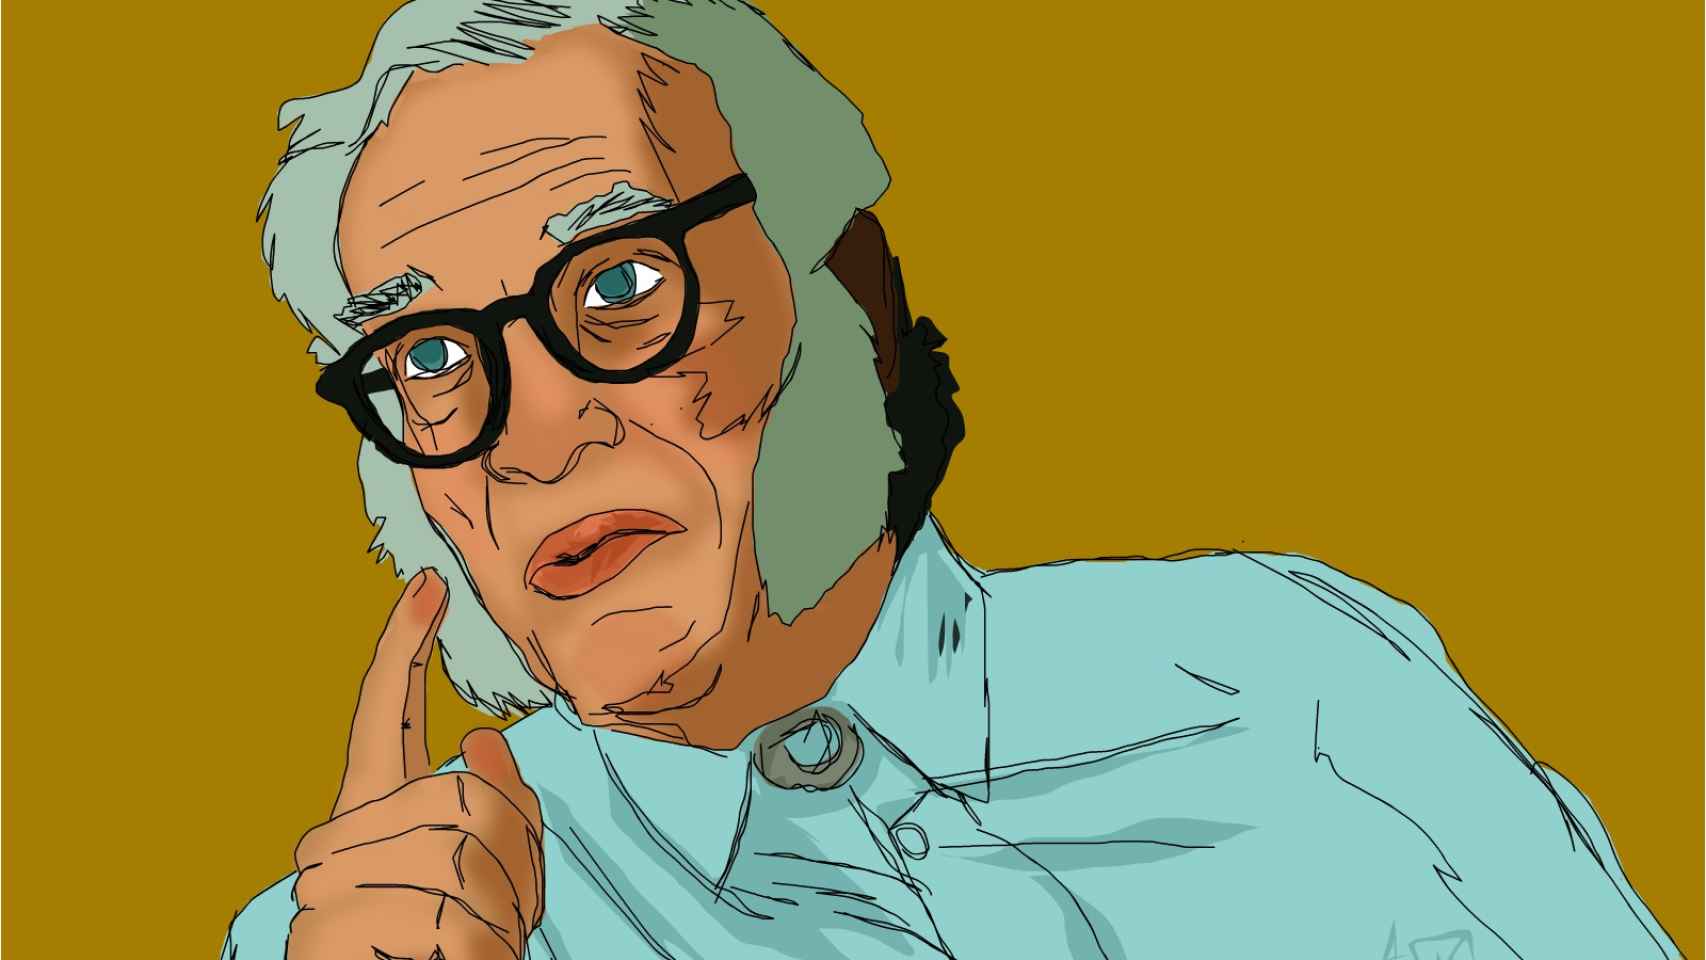 Retrato del escritor Isaac Asimov/www.sketchport.com